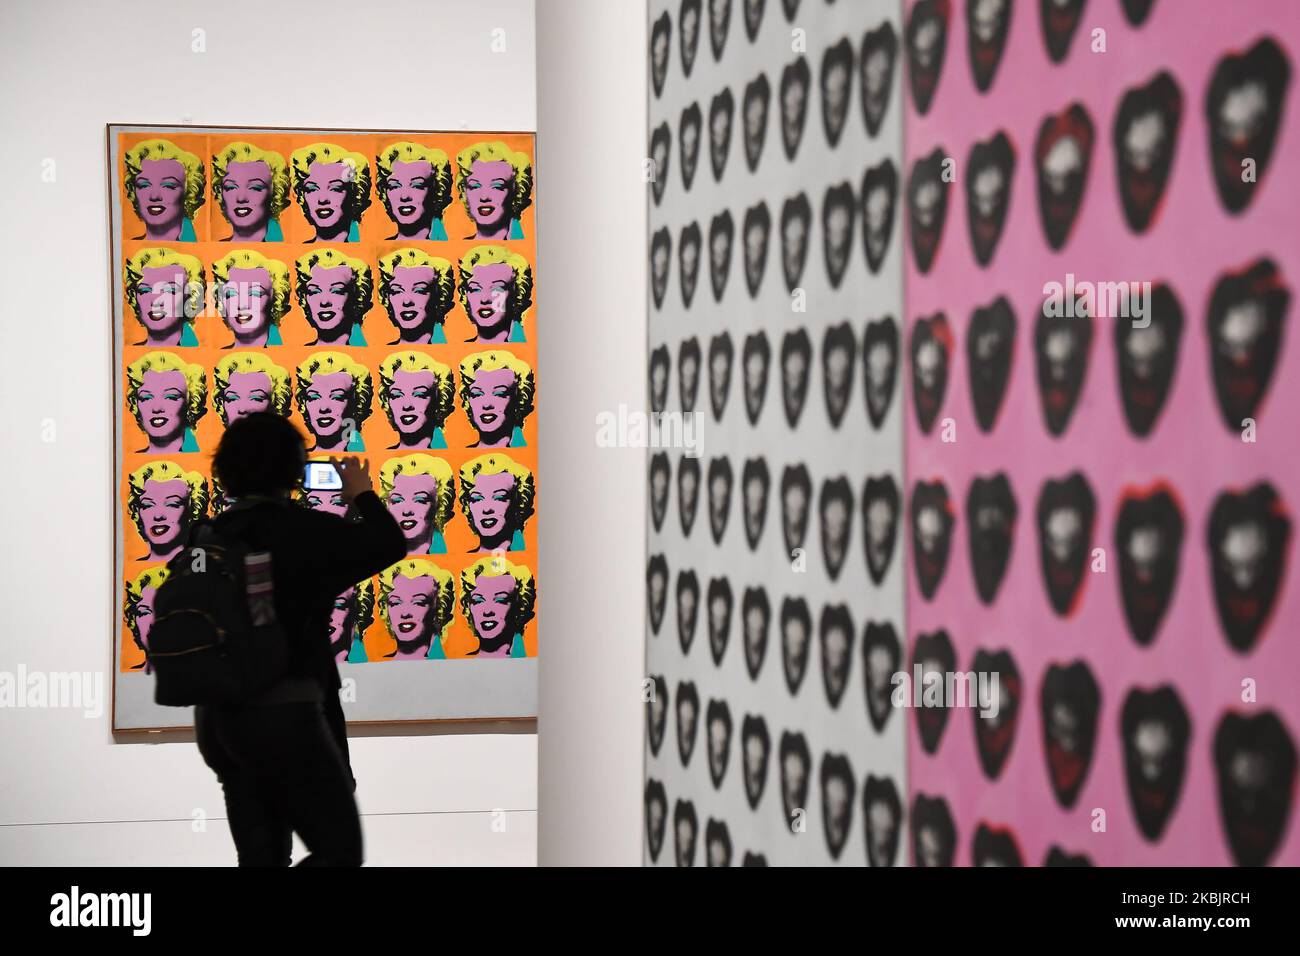 Un assistant de galerie pose avec une œuvre intitulée « Marilyn diptych » 1962 », réalisée par l'artiste américain Andy Warhol lors d'un avant-goût de la prochaine exposition d'Andy Warhol au Tate Modern de Londres sur 10 mars 2020. - L'exposition est prévue de 12 mars à 6 septembre. (LIMITÉ À UN USAGE ÉDITORIAL - MENTION OBLIGATOIRE DE L'ARTISTE LORS DE LA PUBLICATION - POUR ILLUSTRER L'ÉVÉNEMENT TEL QUE SPÉCIFIÉ DANS LA LÉGENDE) (PHOTO D'ALBERTO PEZZALI/NURPHOTO) Banque D'Images